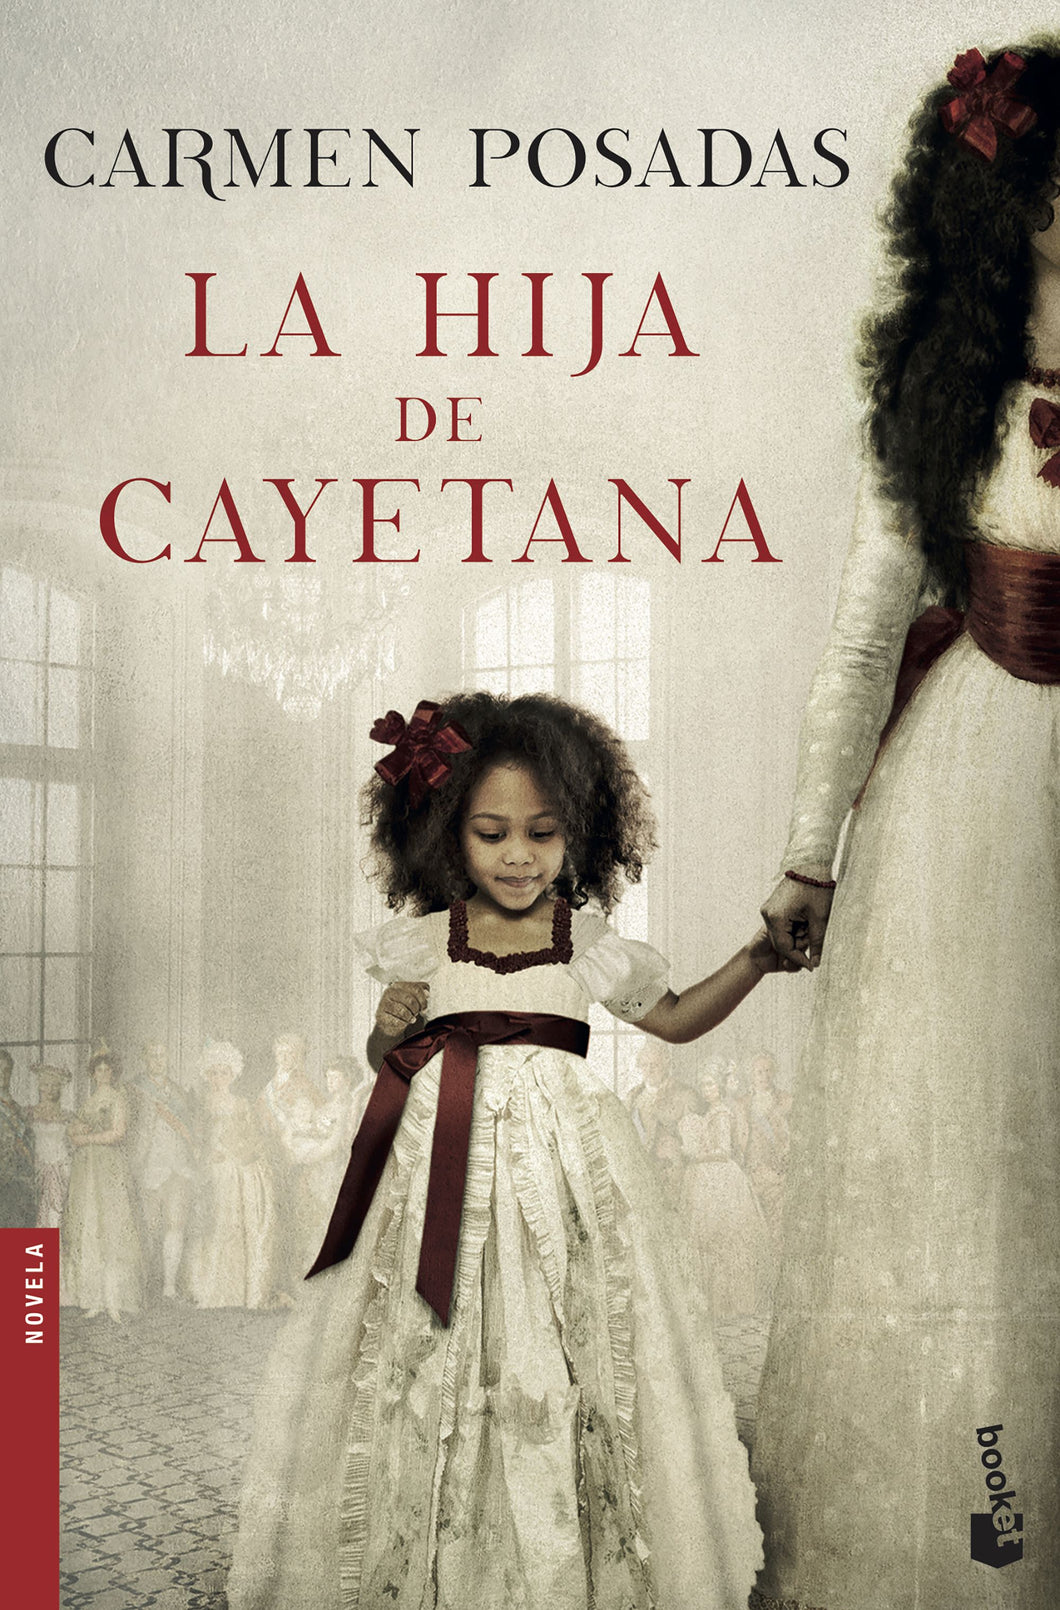 LA HIJA DE CAYETANA - Carmen Posadas